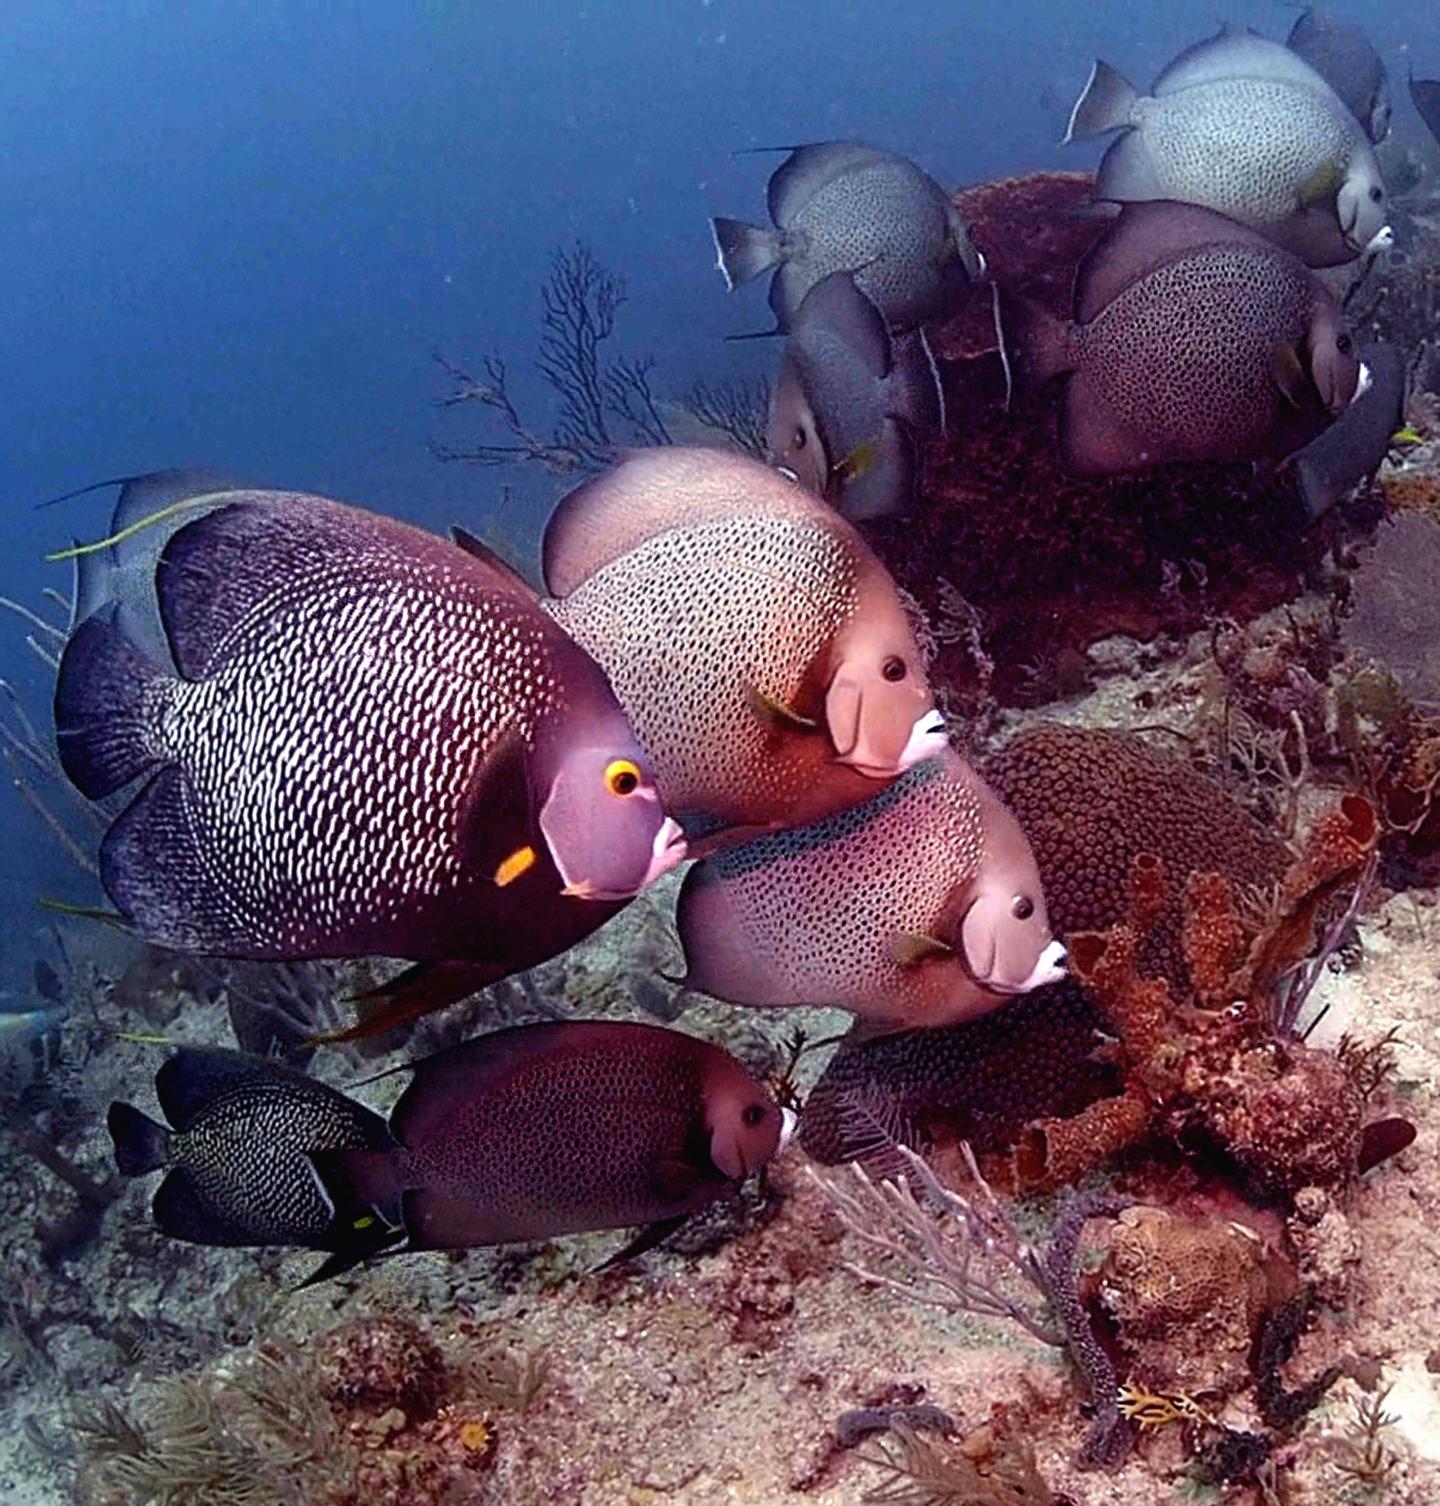 French and Gray Angelfishes Eating the Tube Sponge <I>Callyspongia vaginalis</I>